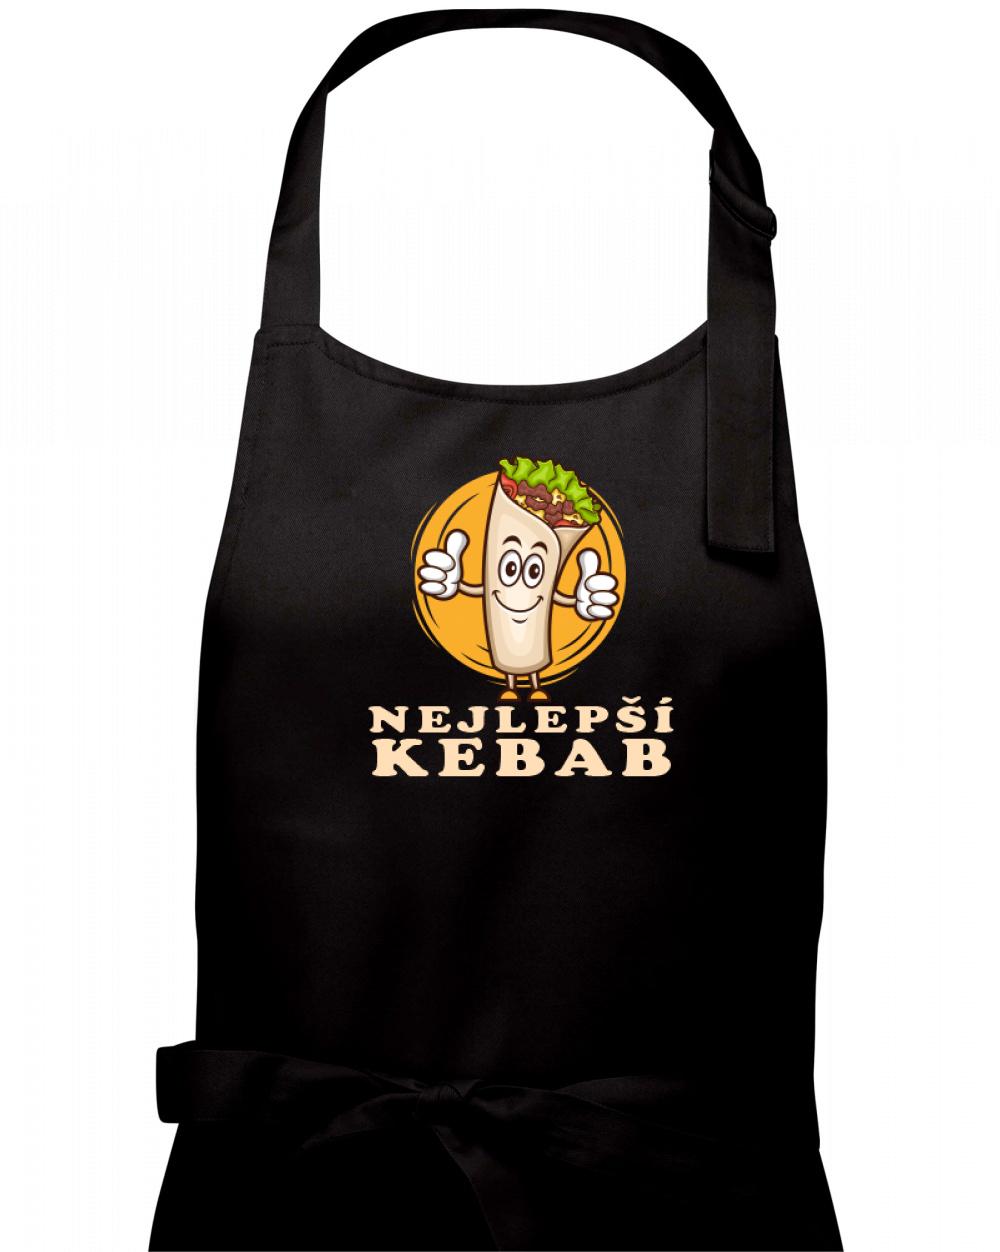 Nejlepší kebab - Zástěra na vaření